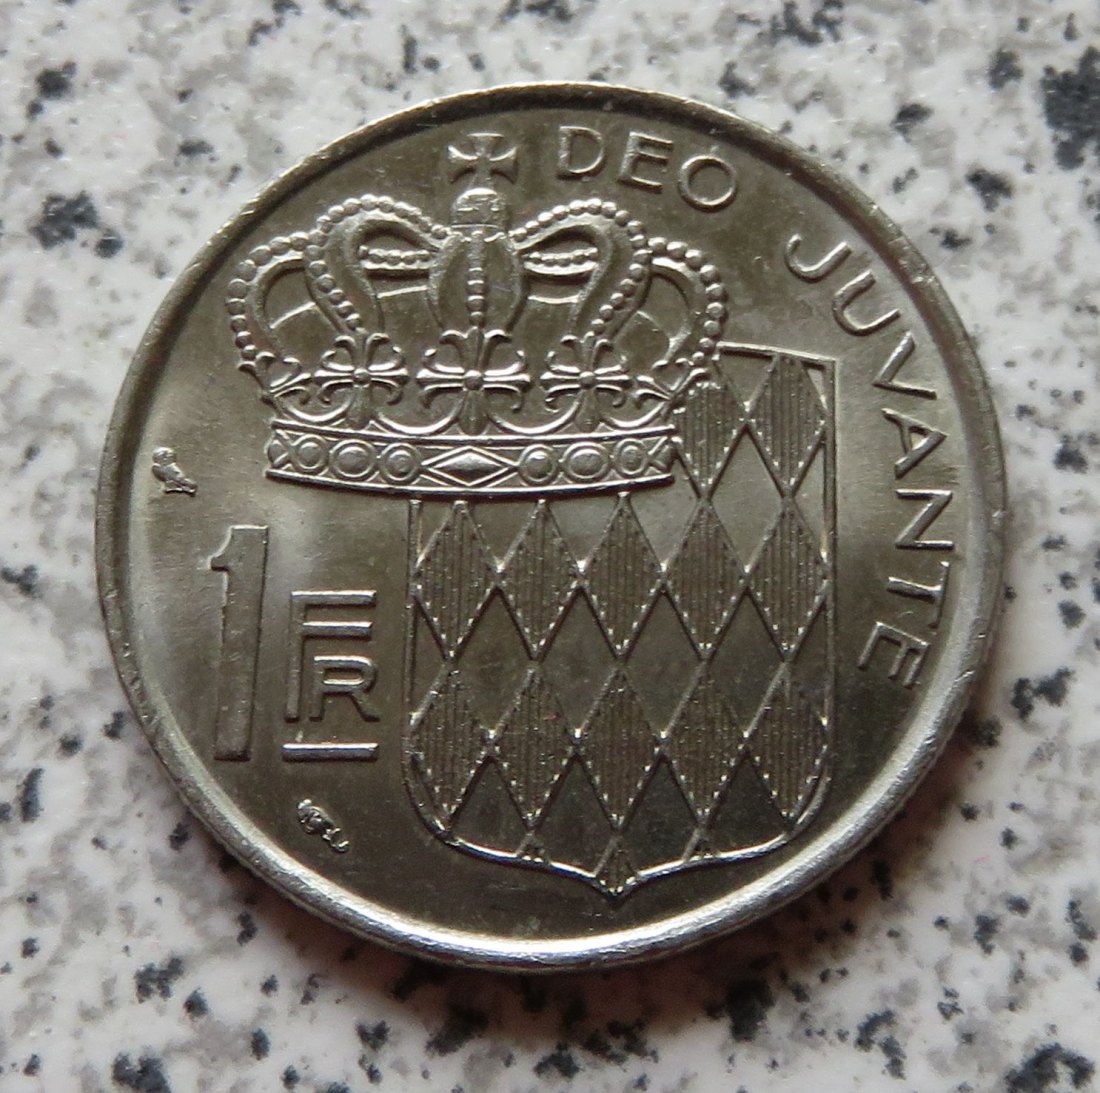  Monaco 1 Franc 1974   